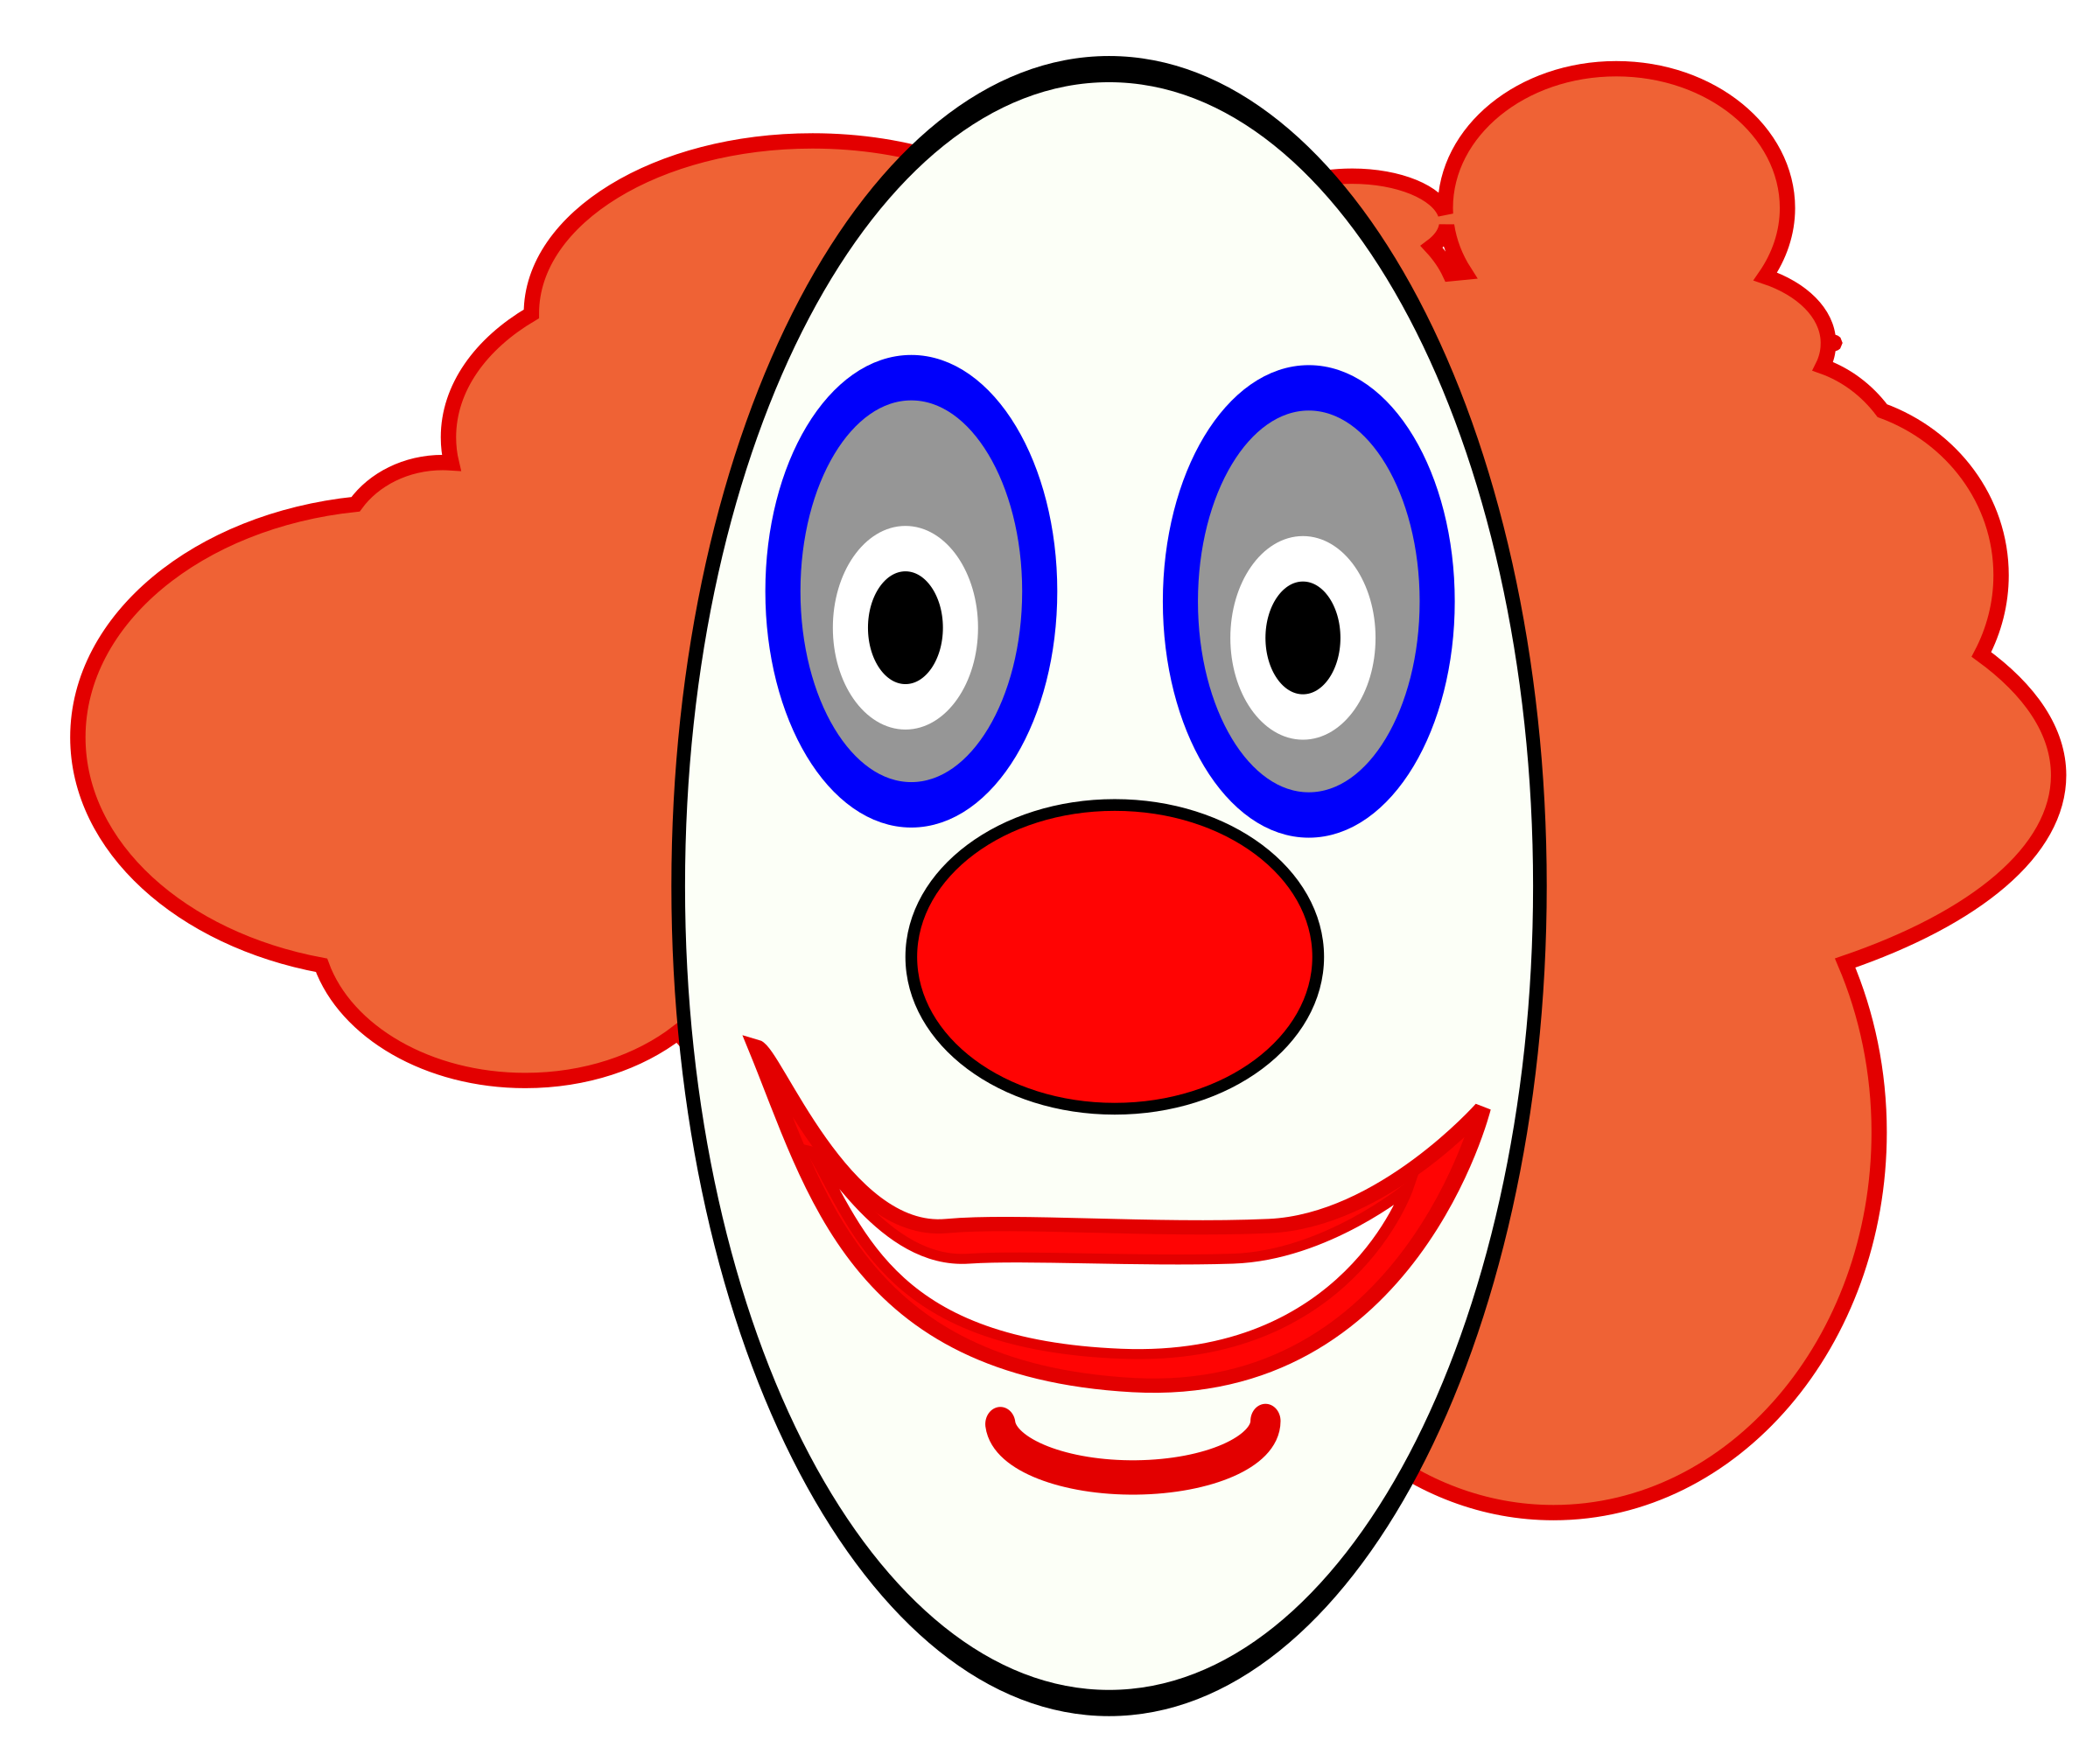 Circus joker face png. Hands clipart clown